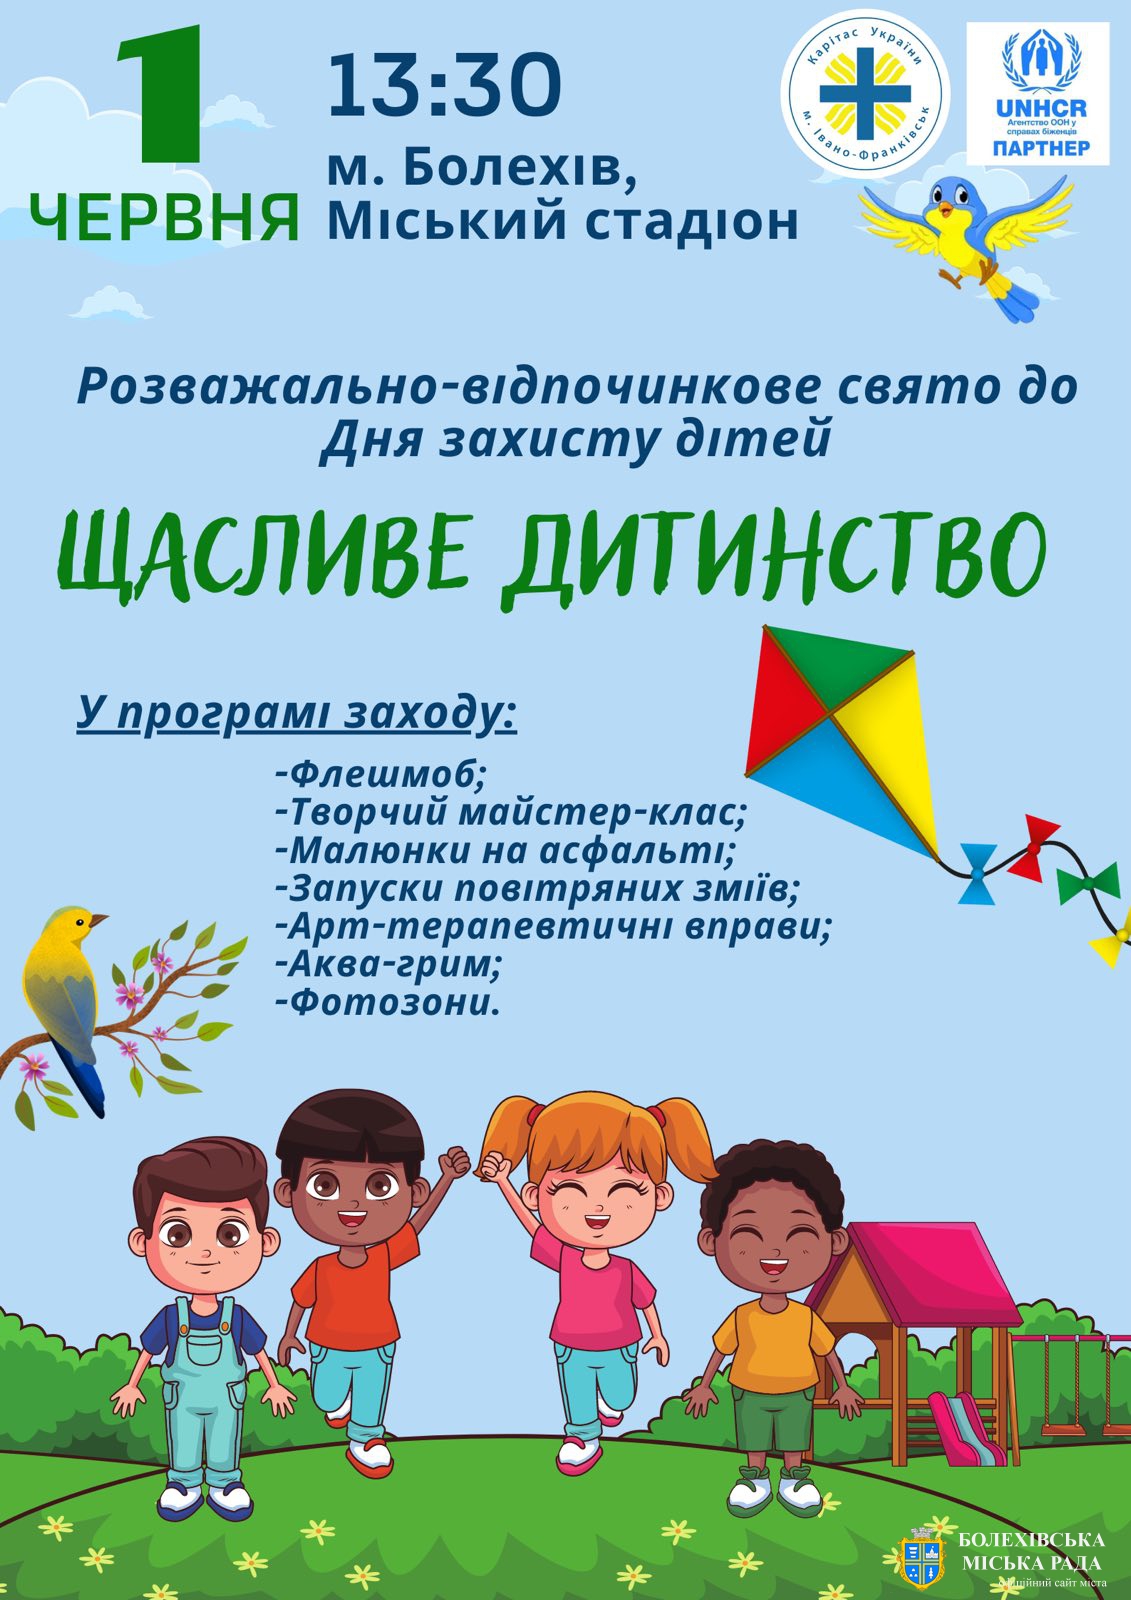 Запрошуємо всіх бажаючих взяти участь у розважально-відпочинковому святі "Щасливе дитинство" до Дня захисту дітей